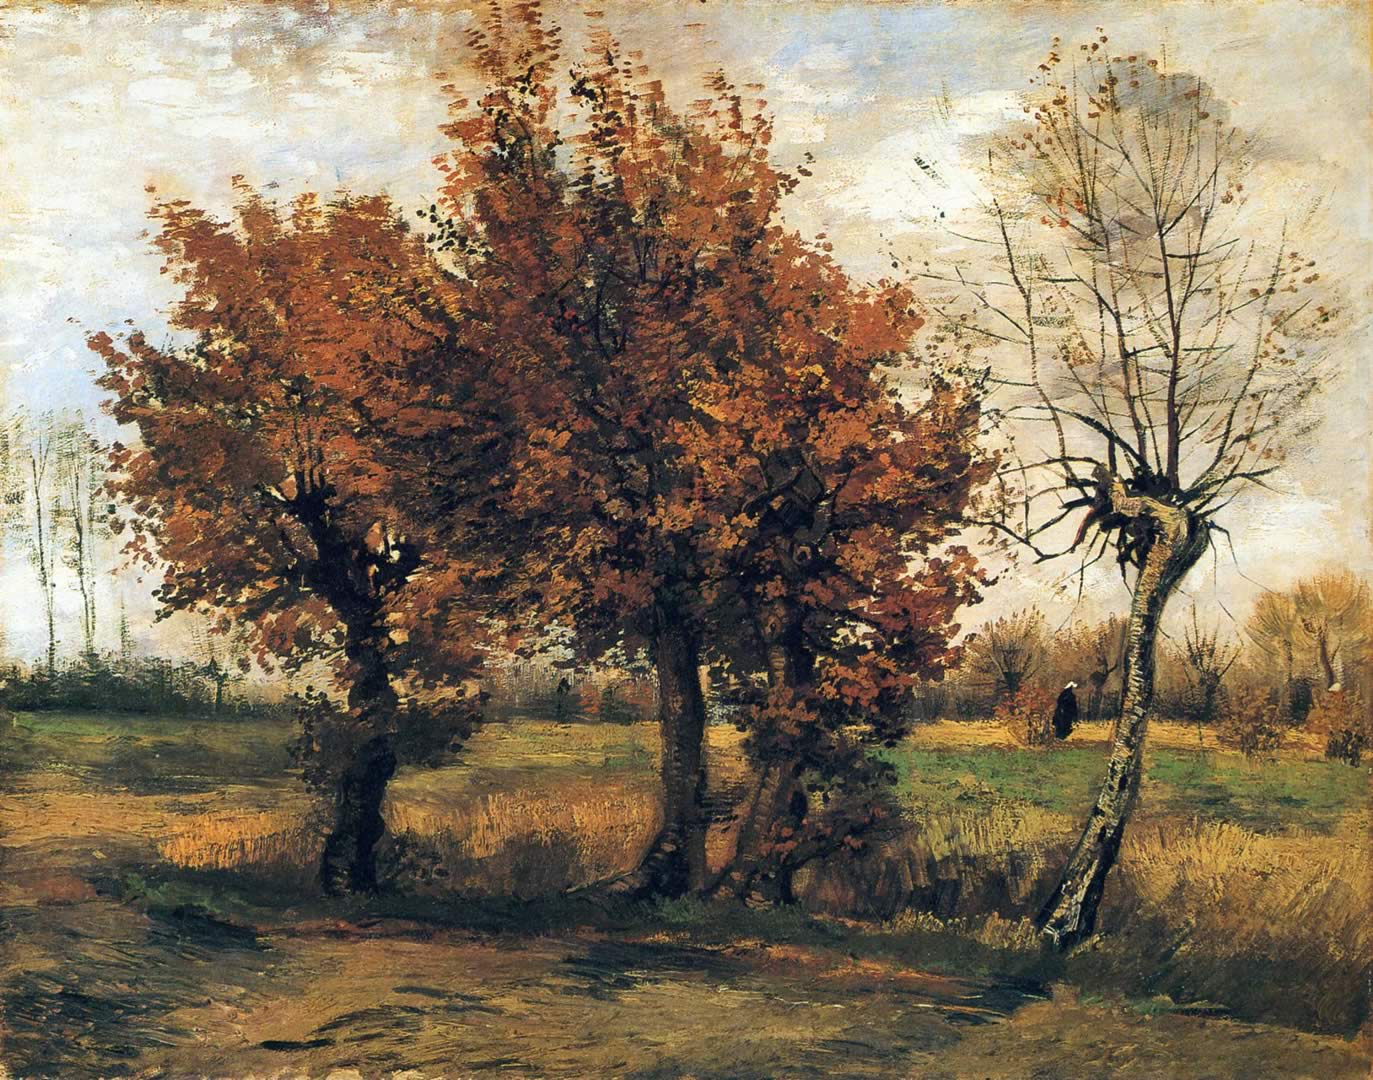 Autumn Landscape With Four Trees - Vincent Van Gogh Autumn Landscape With Four Trees - HD Wallpaper 